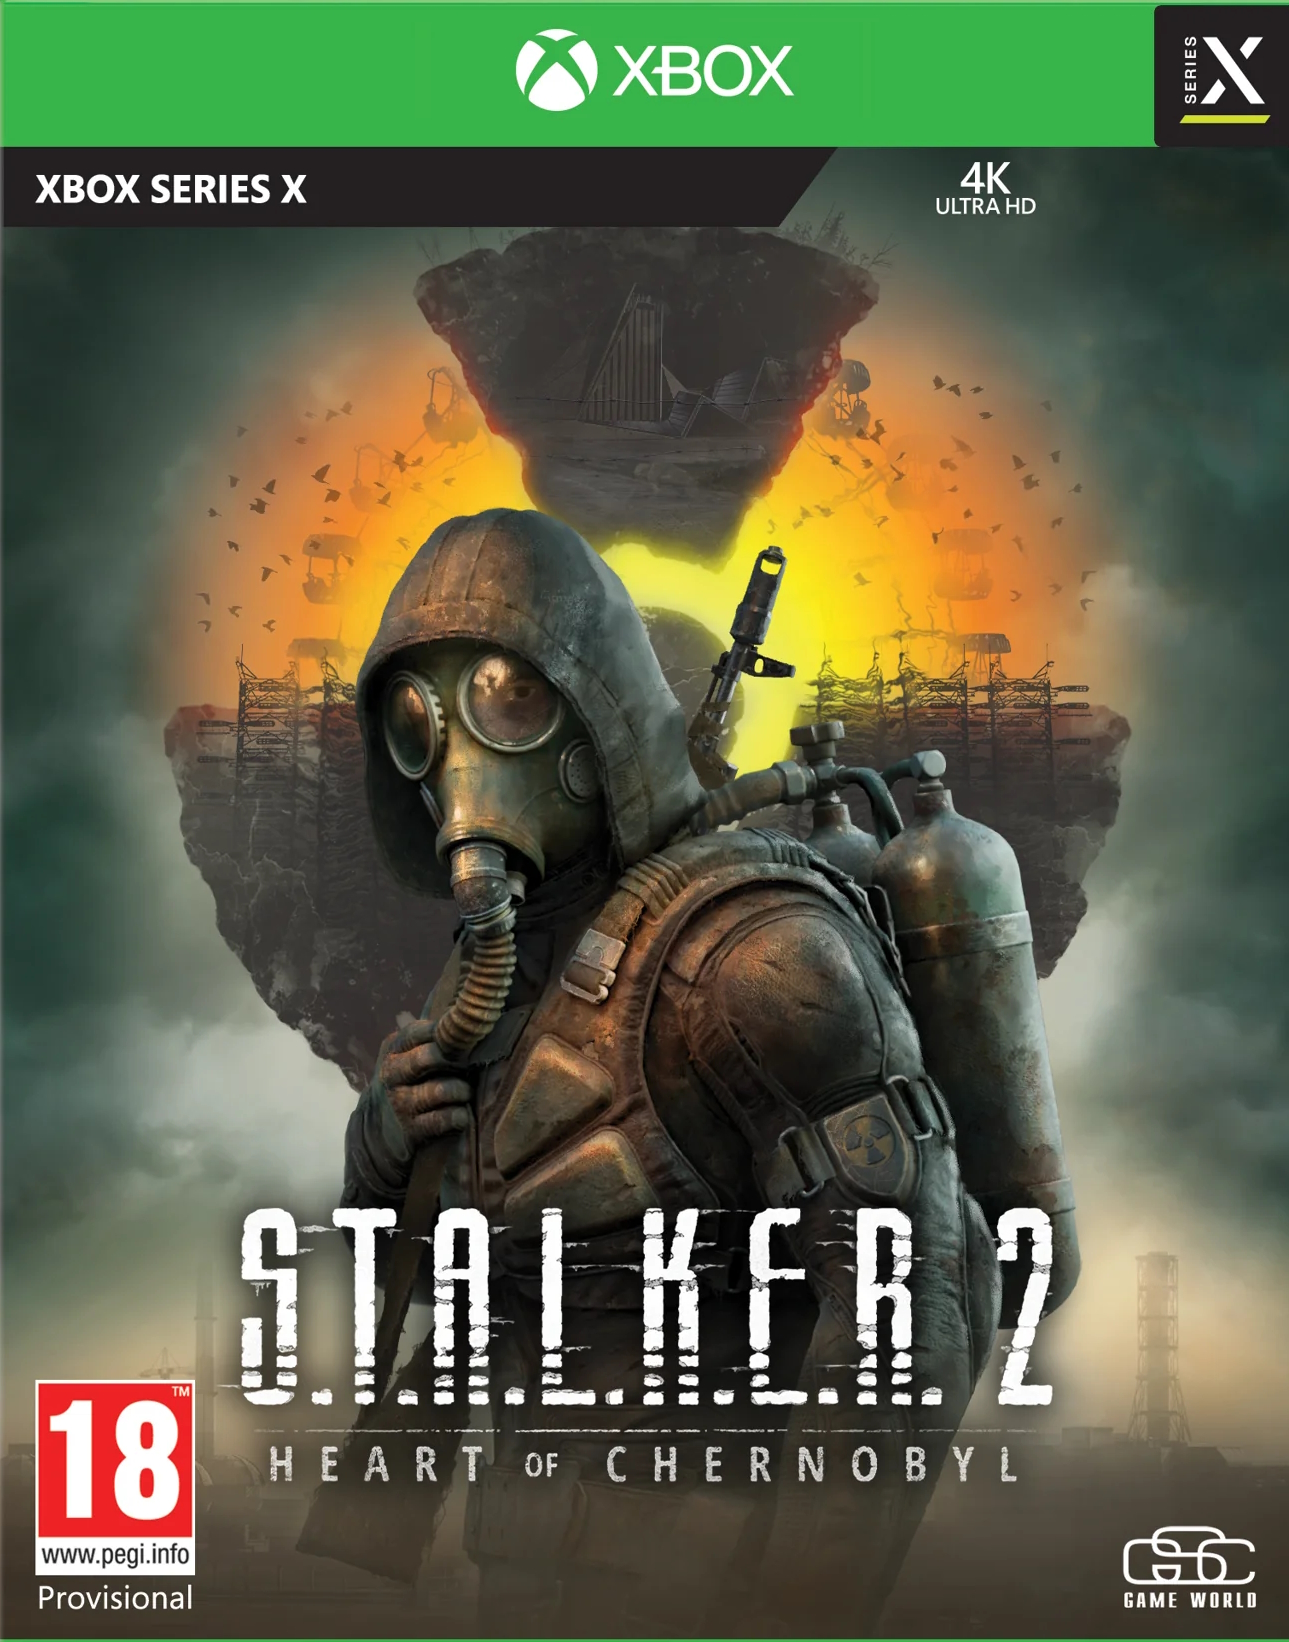 jaquette reduite de S.T.A.L.K.E.R. 2: Heart of Chornobyl sur Xbox Series